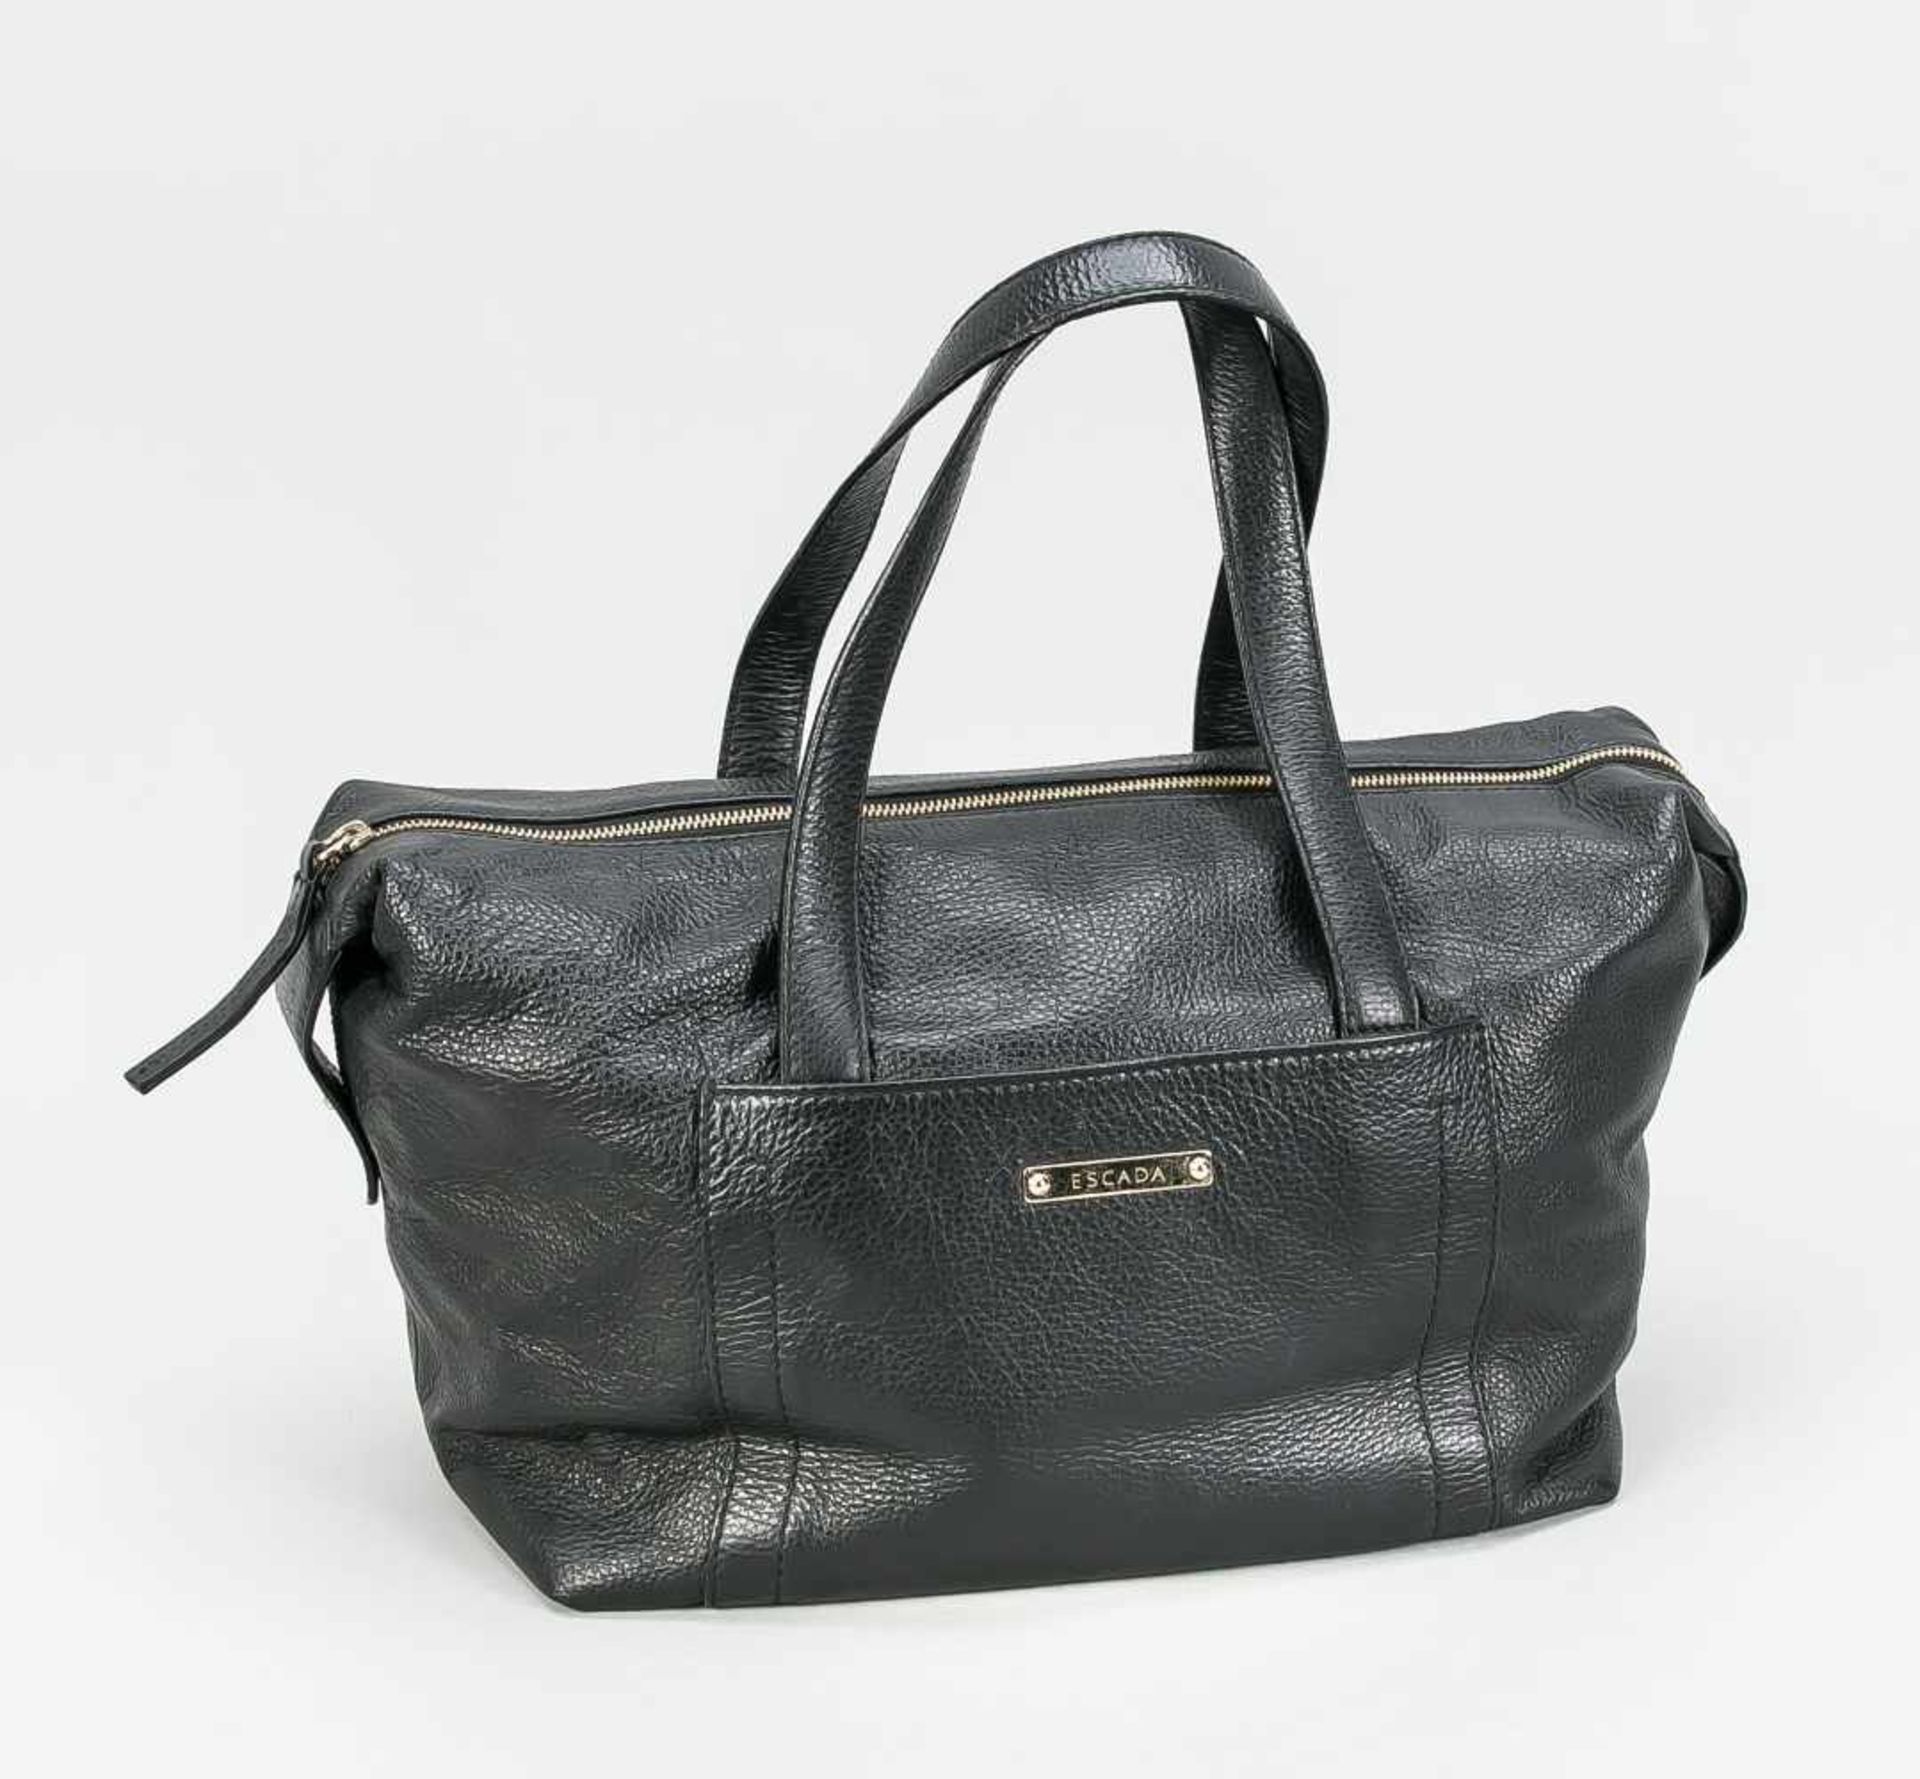 Escada Handtasche, weiches, schwarzes, genarbtes Leder mit zwei Henkeln und Reißverschlußzum